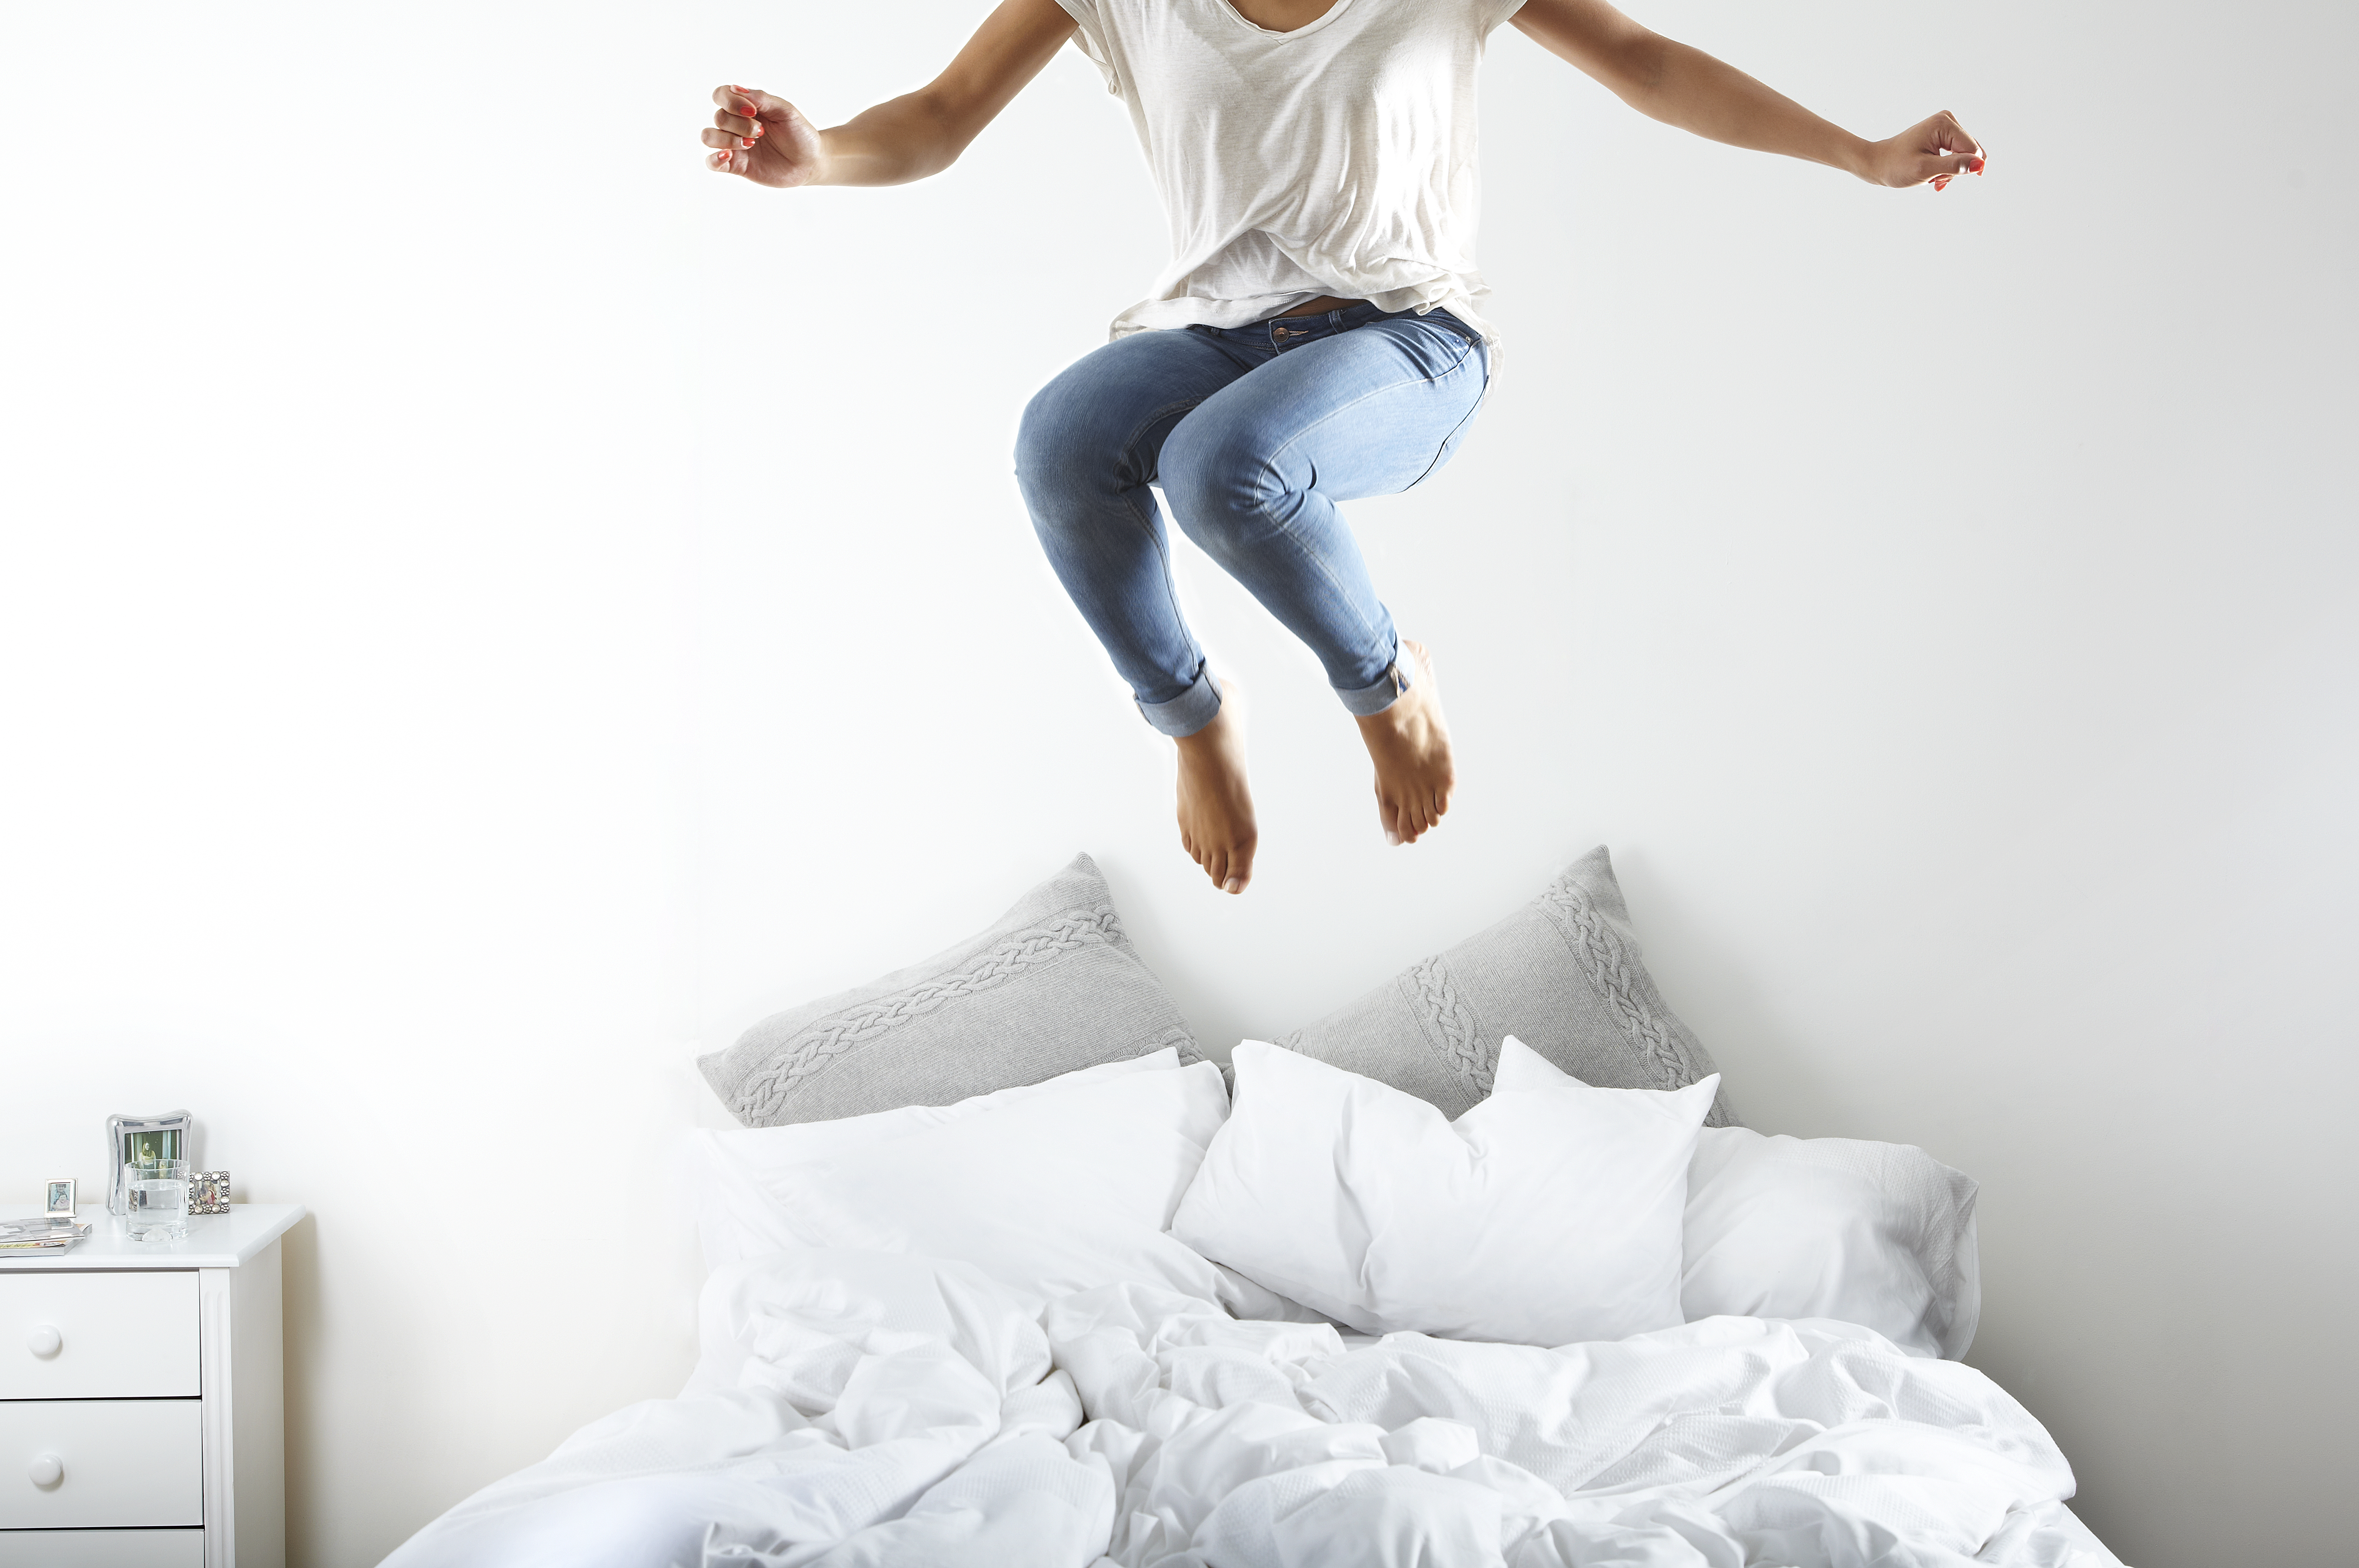 Porträt einer Frau, die auf das Bett springt | Quelle: Getty Images